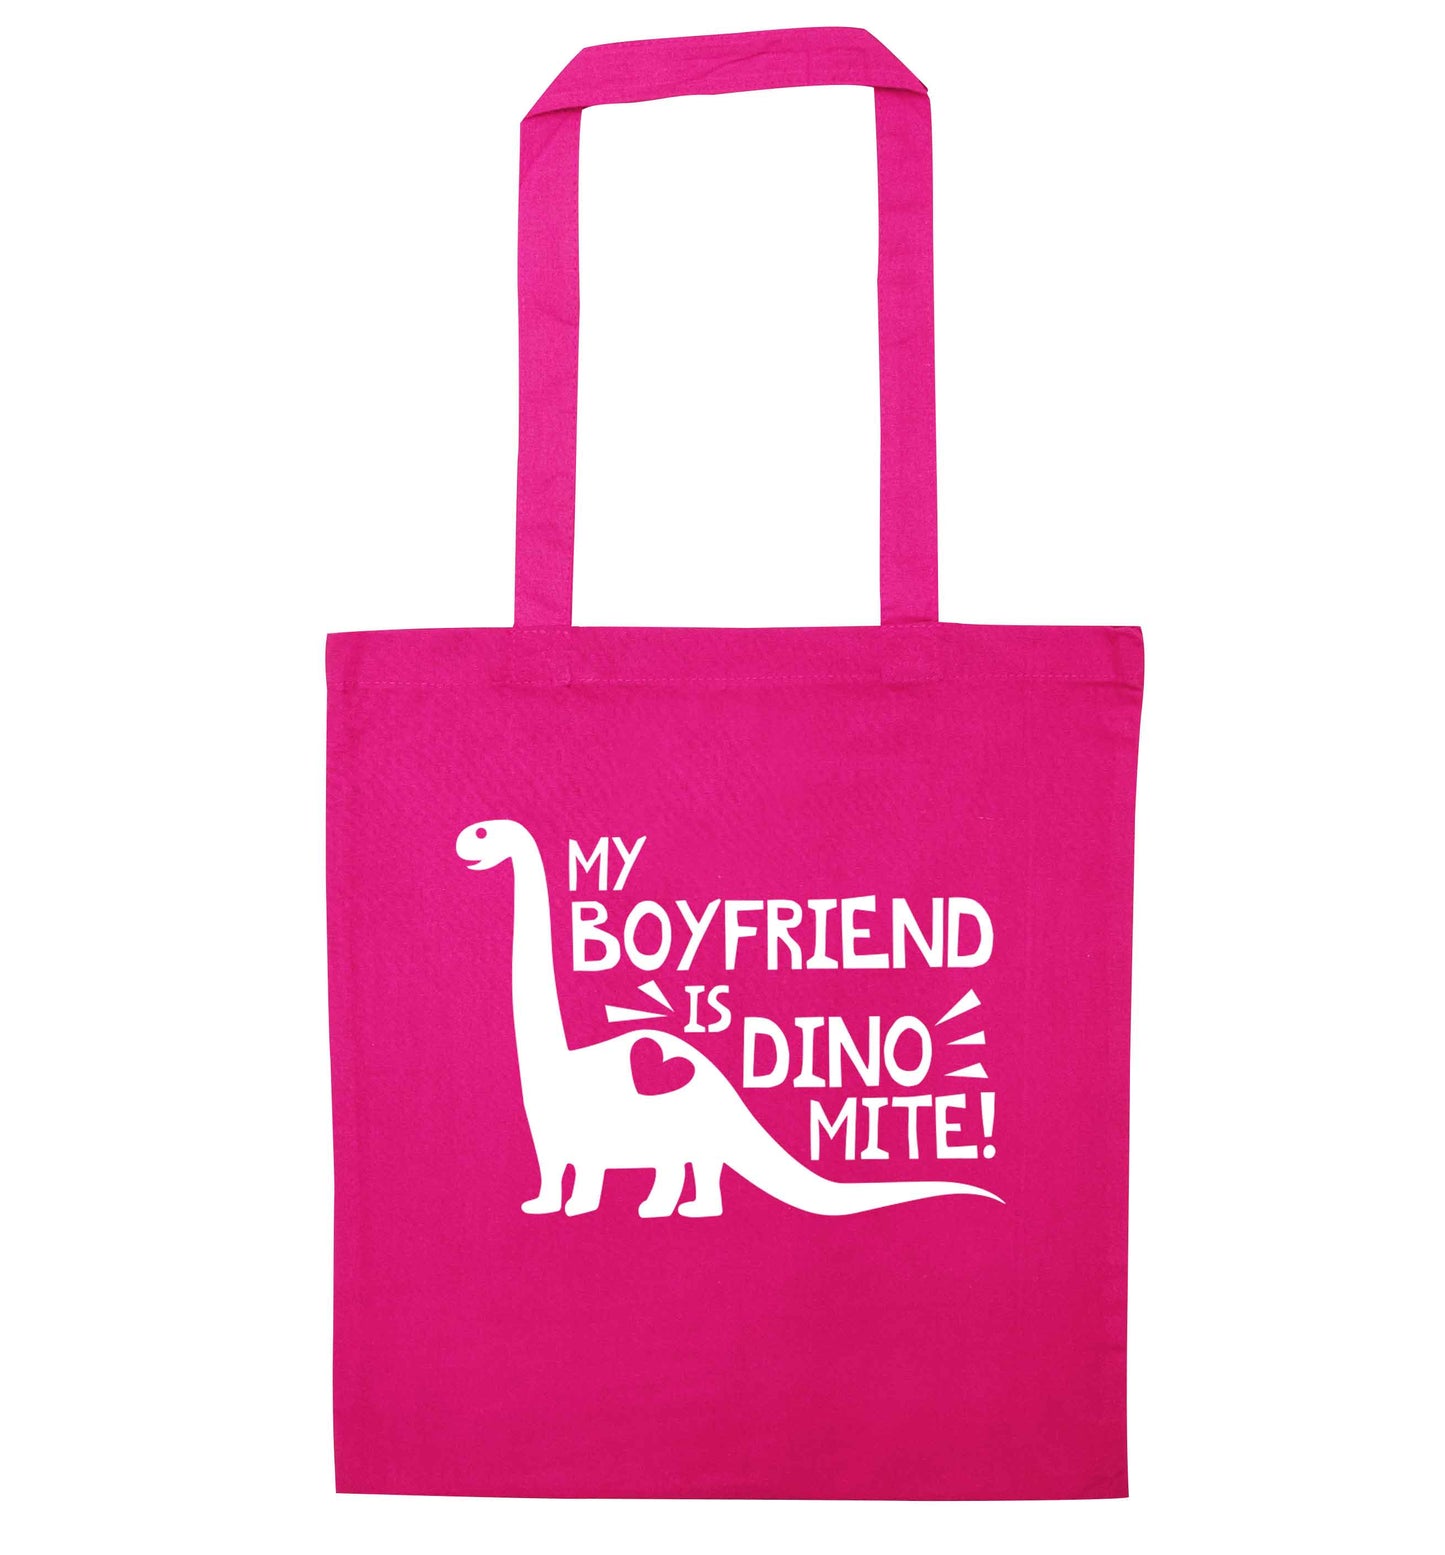 My boyfriend is dinomite! pink tote bag